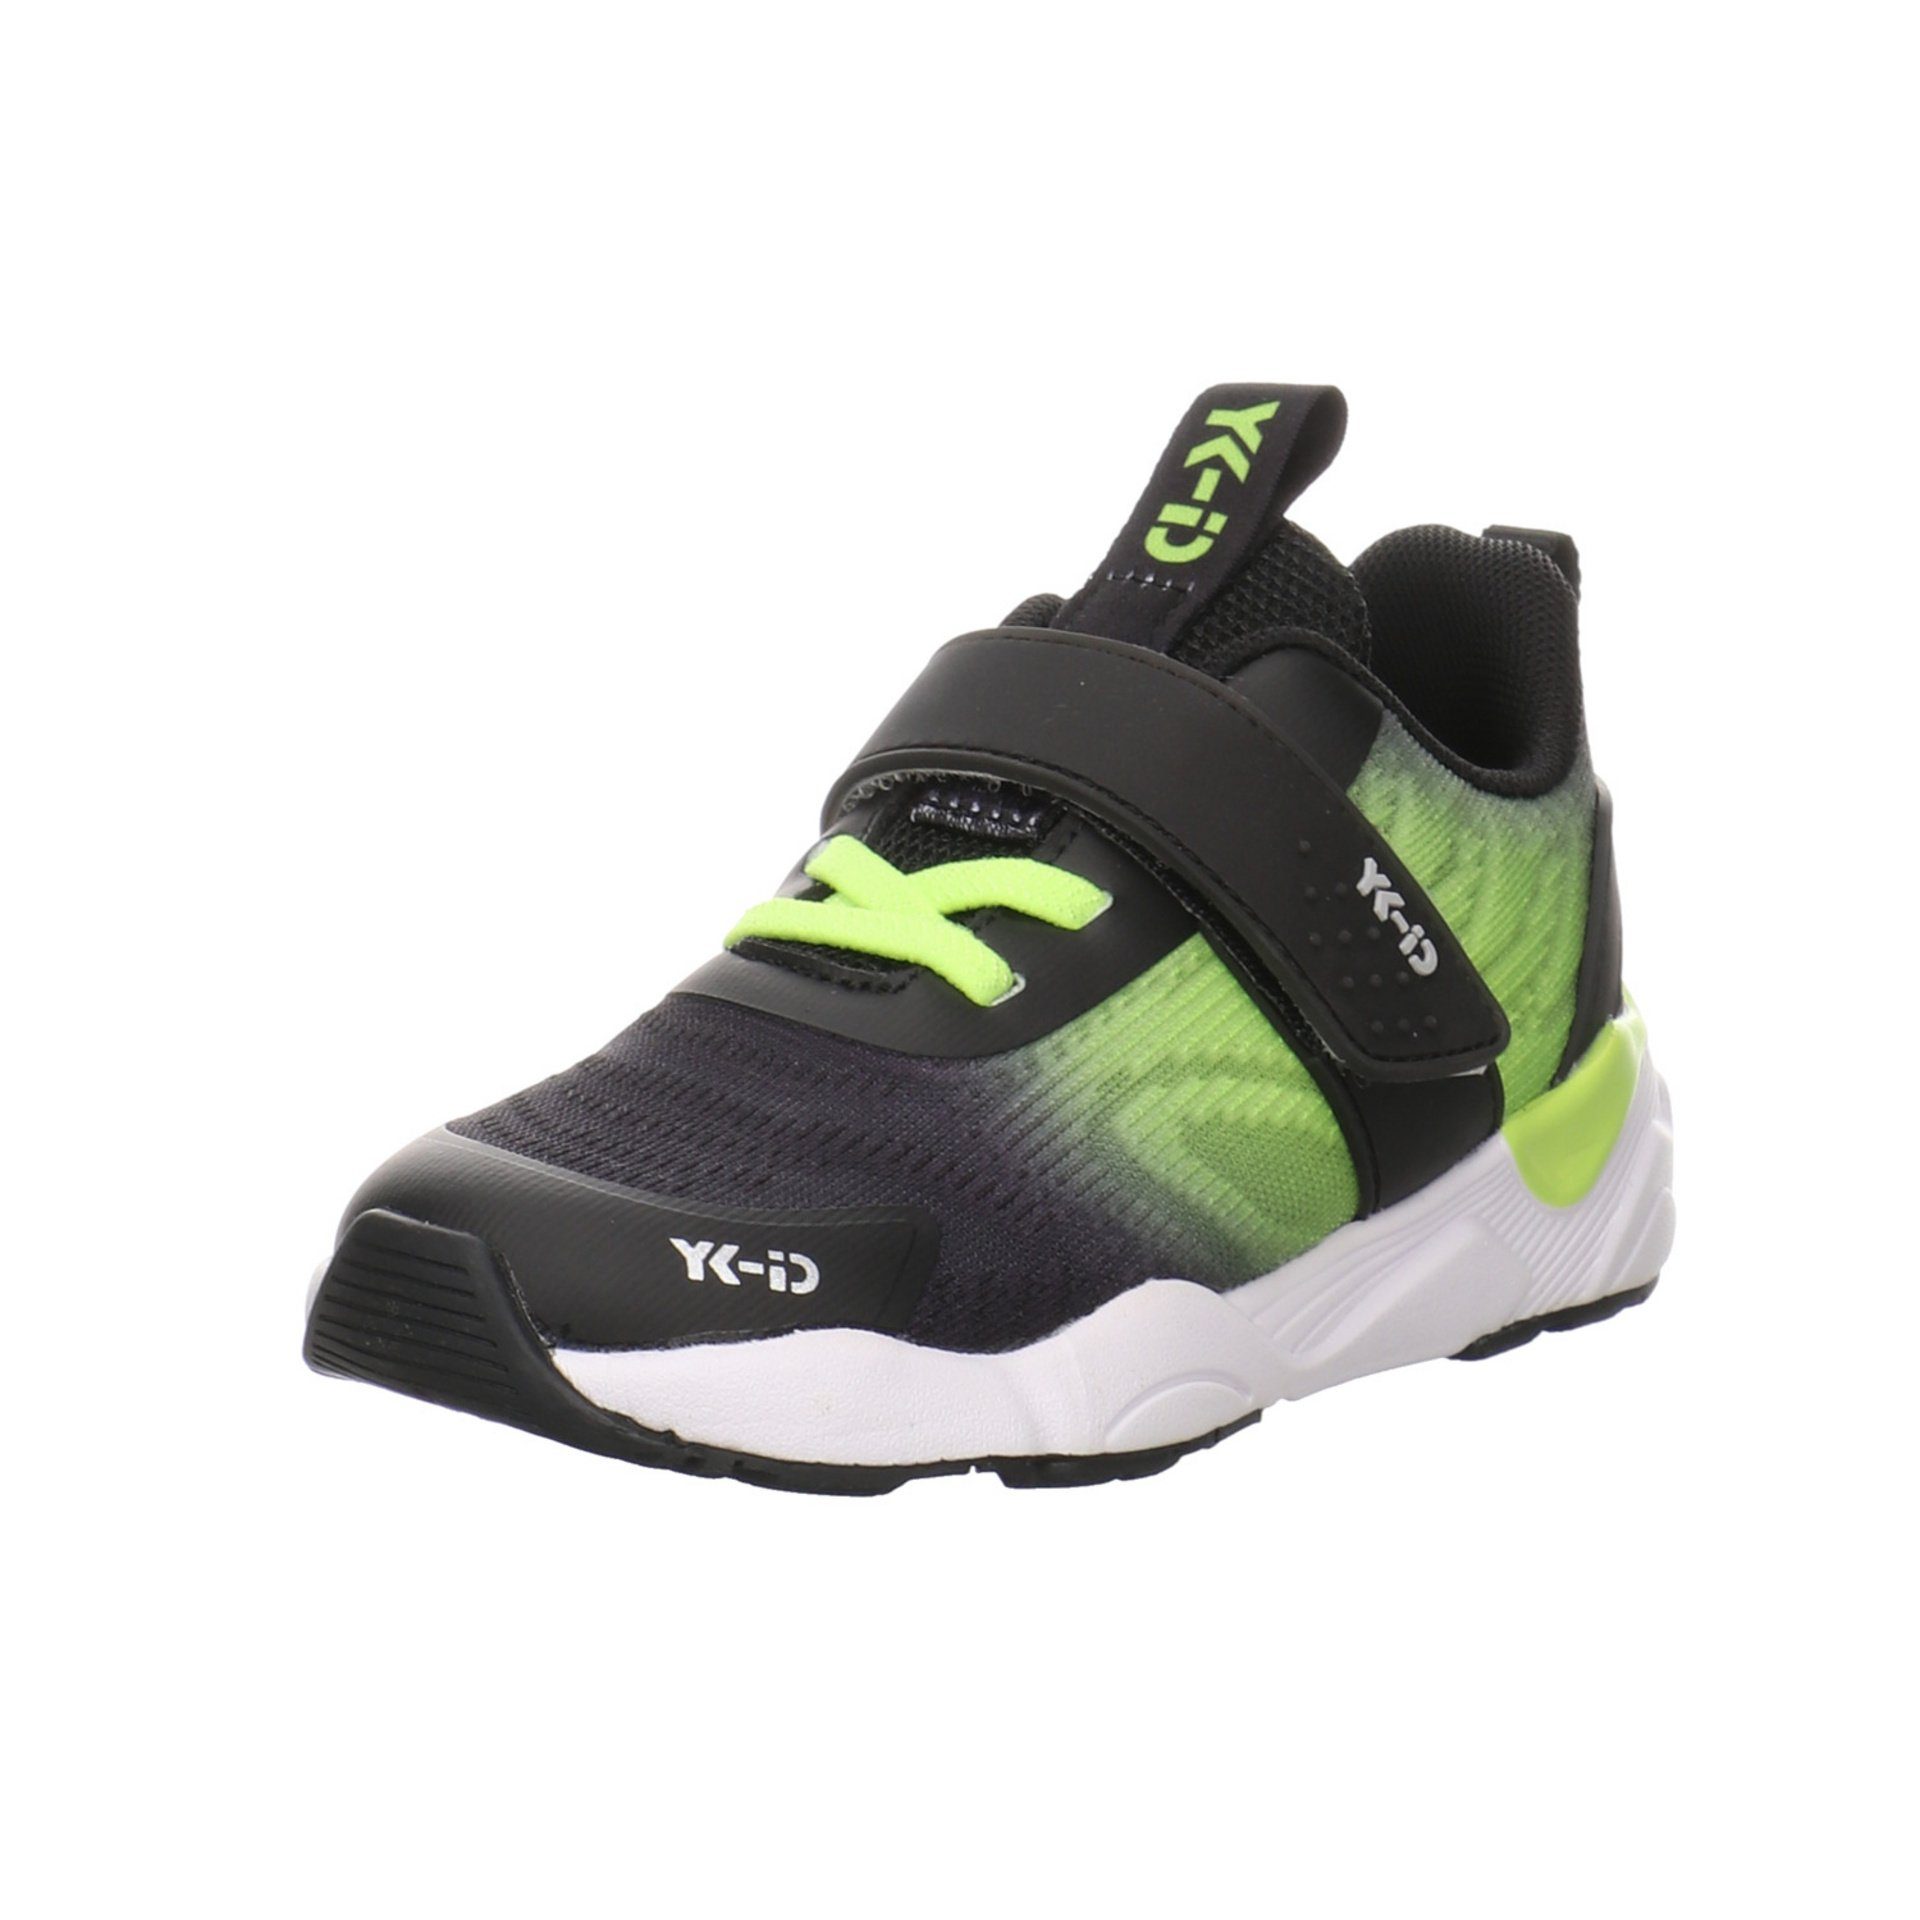 YK-ID by Lurchi Mädchen Schnürhalbschuhe Leif Sneaker Kinderschuhe Stiefelette Synthetikkombination Black neon green | Sneaker